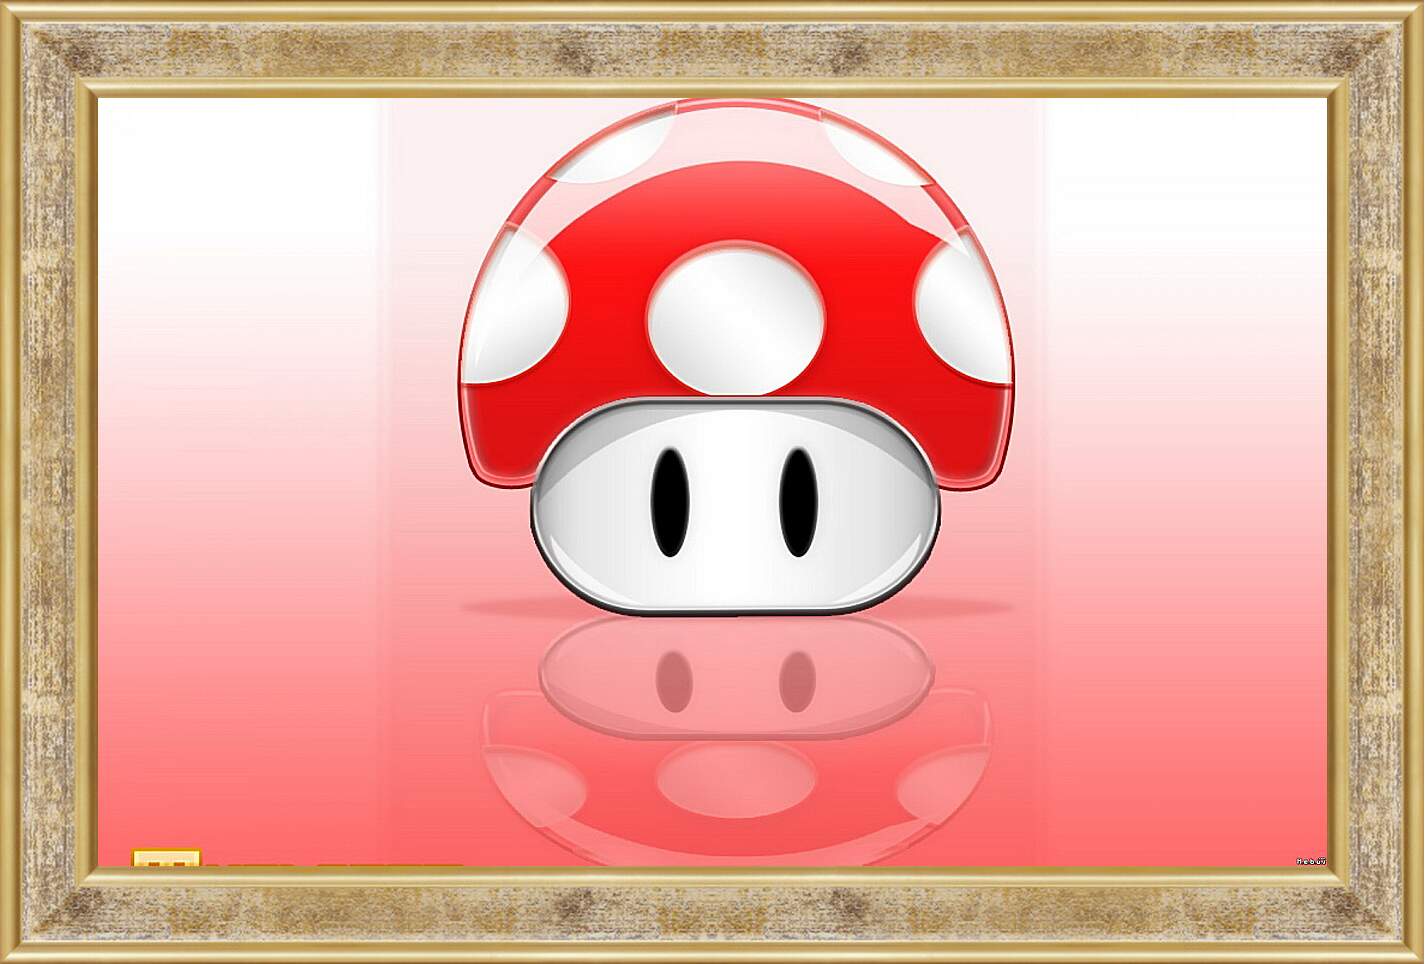 Картина в раме - Mario
